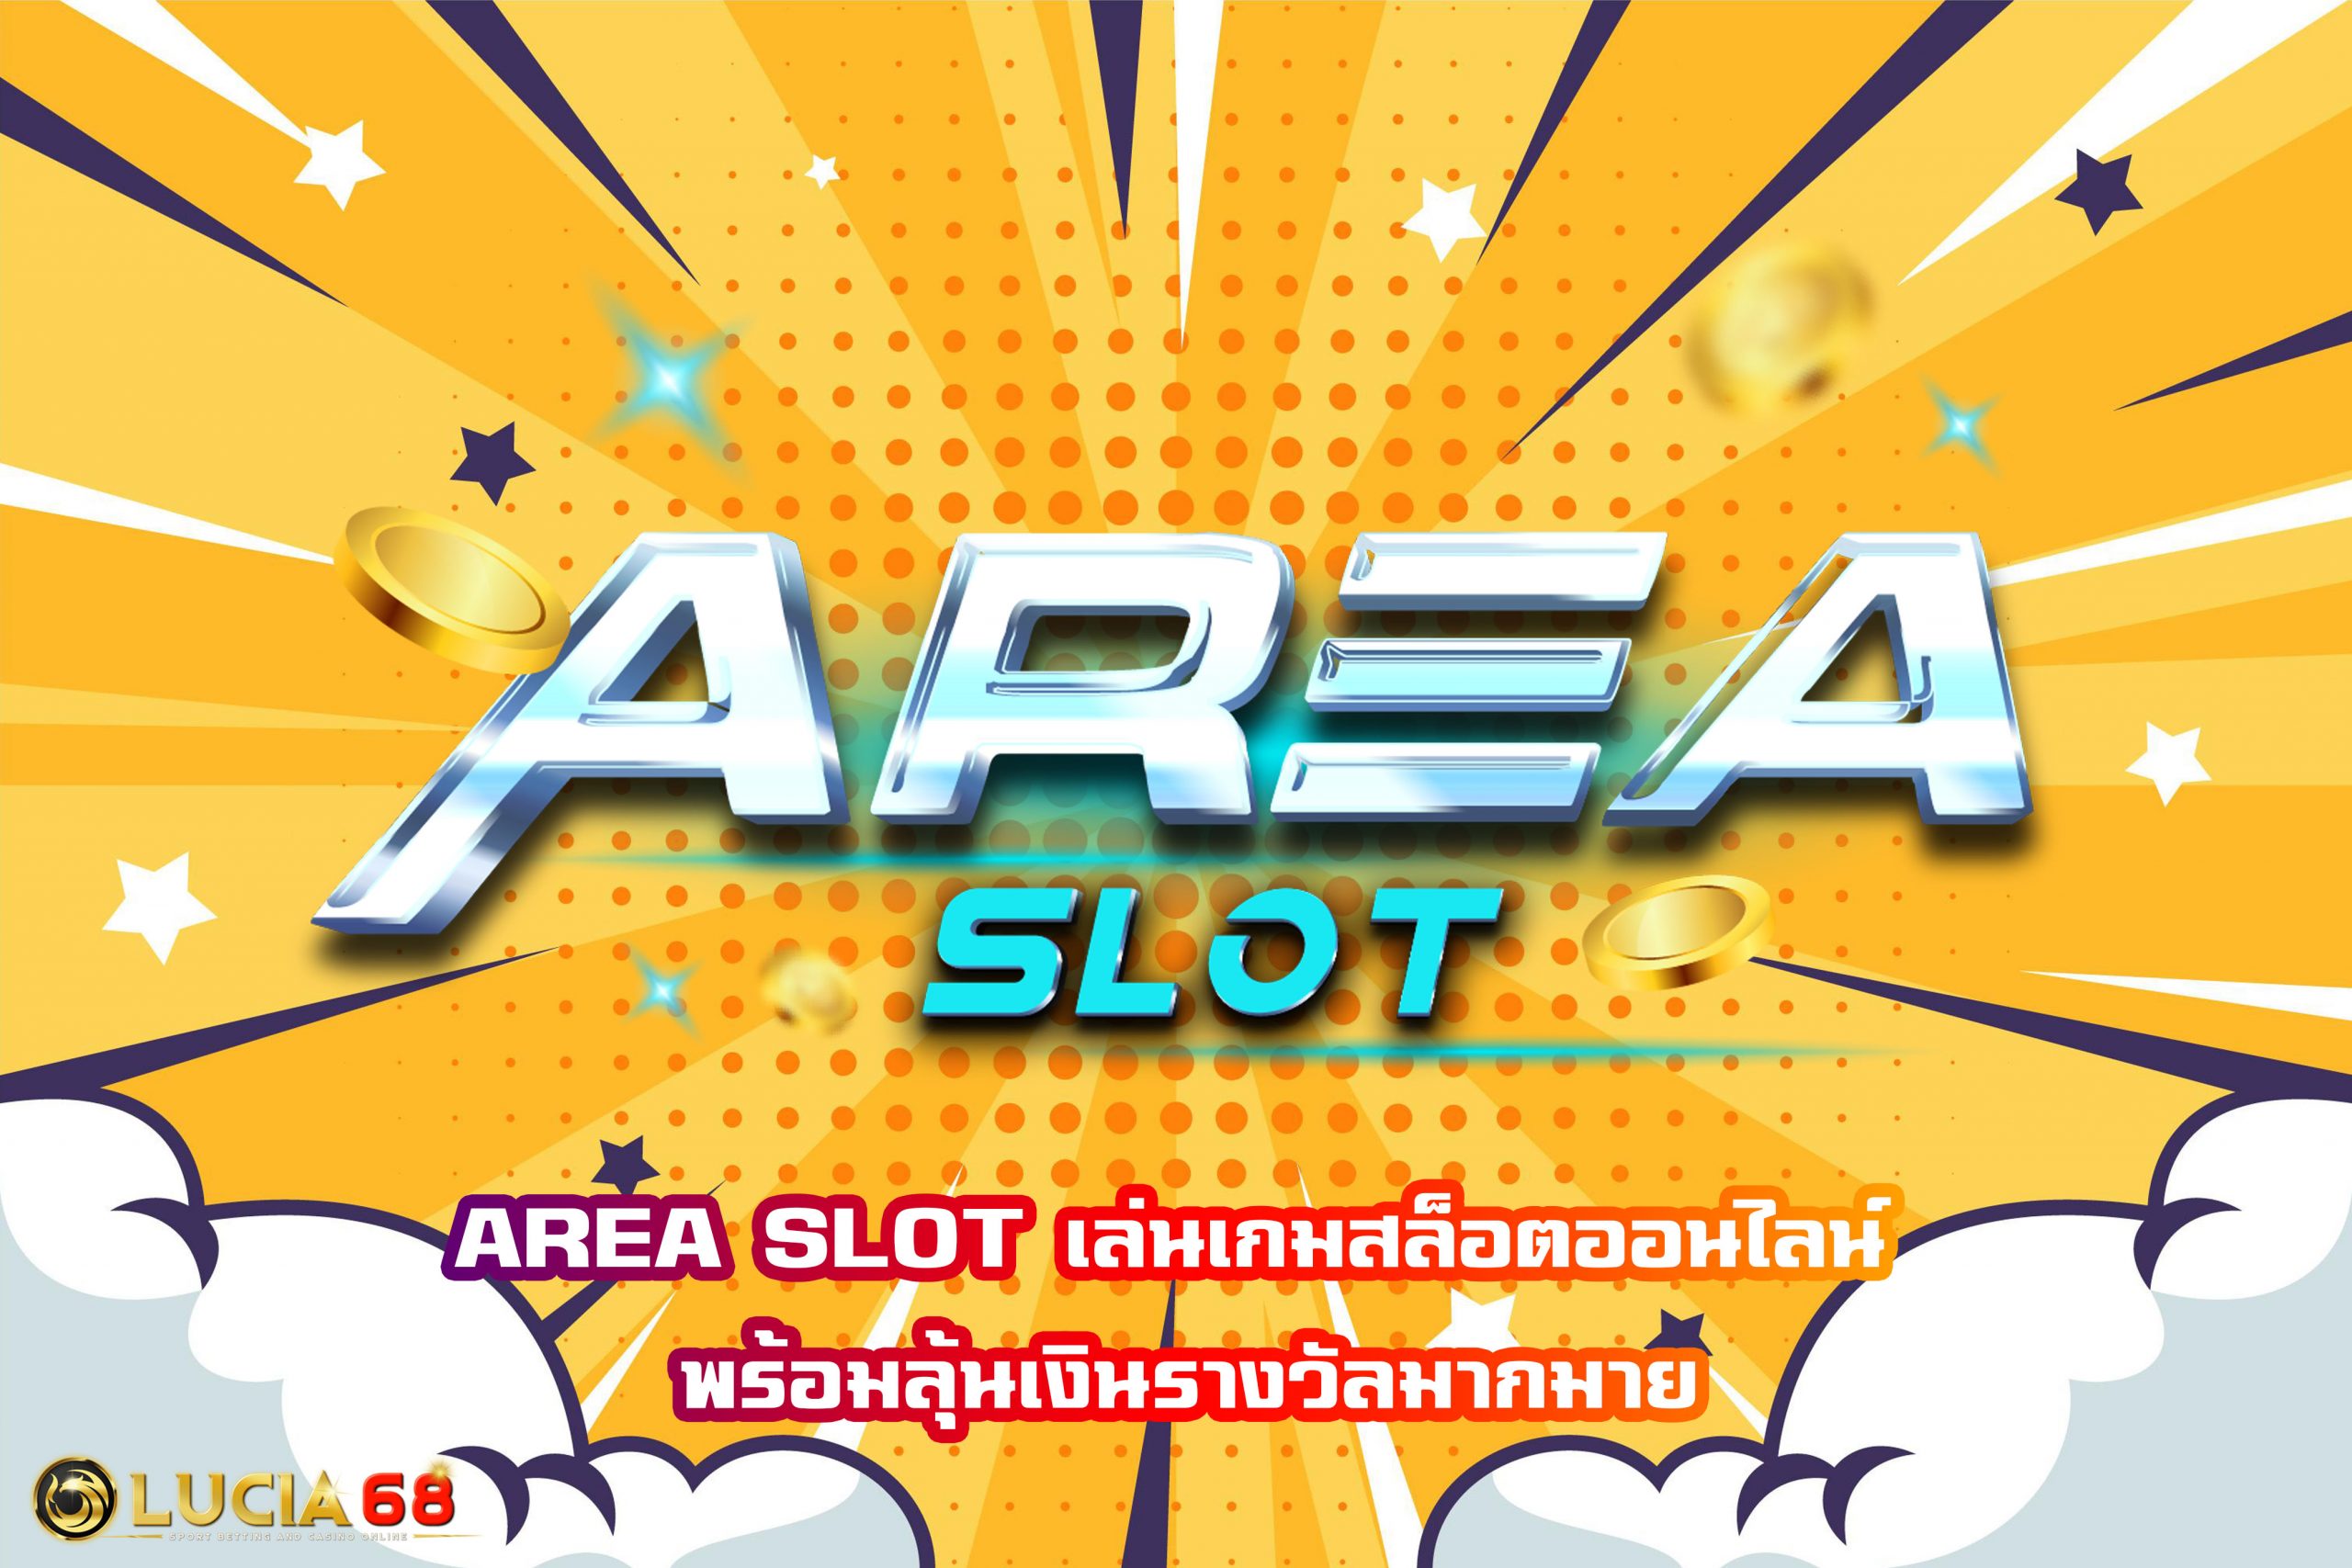 AREA SLOT เล่นเกมสล็อตออนไลน์ พร้อมลุ้นเงินรางวัลมากมาย